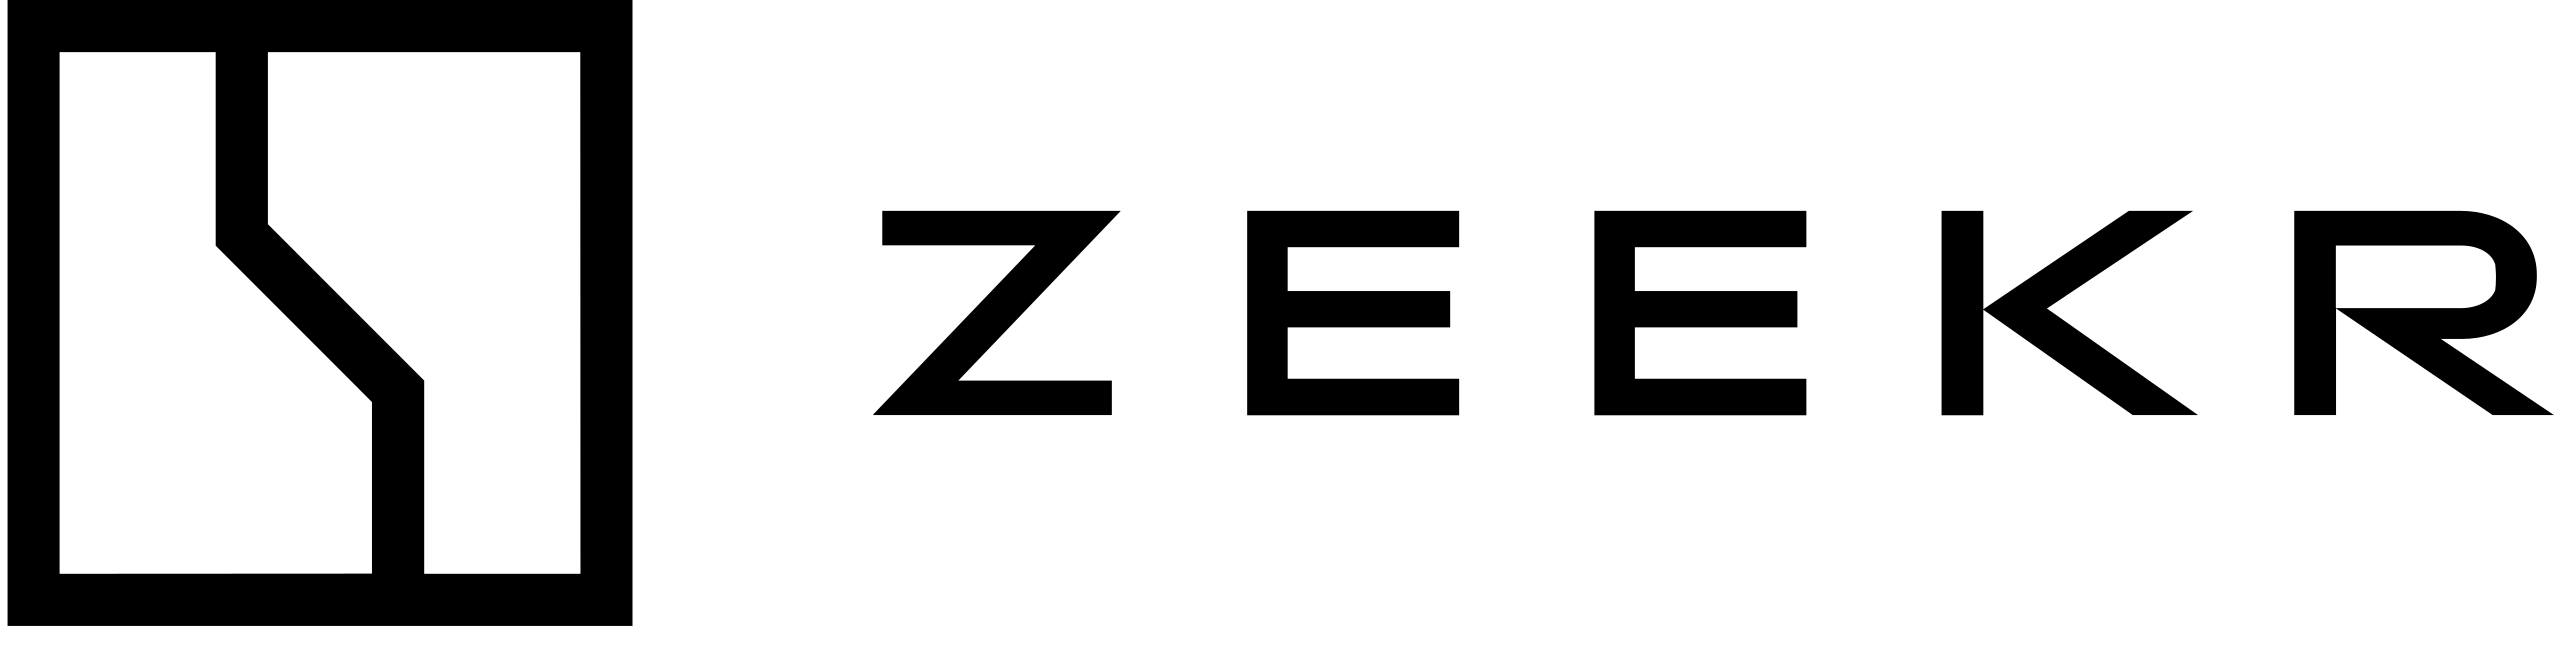 Zeekr logo svg